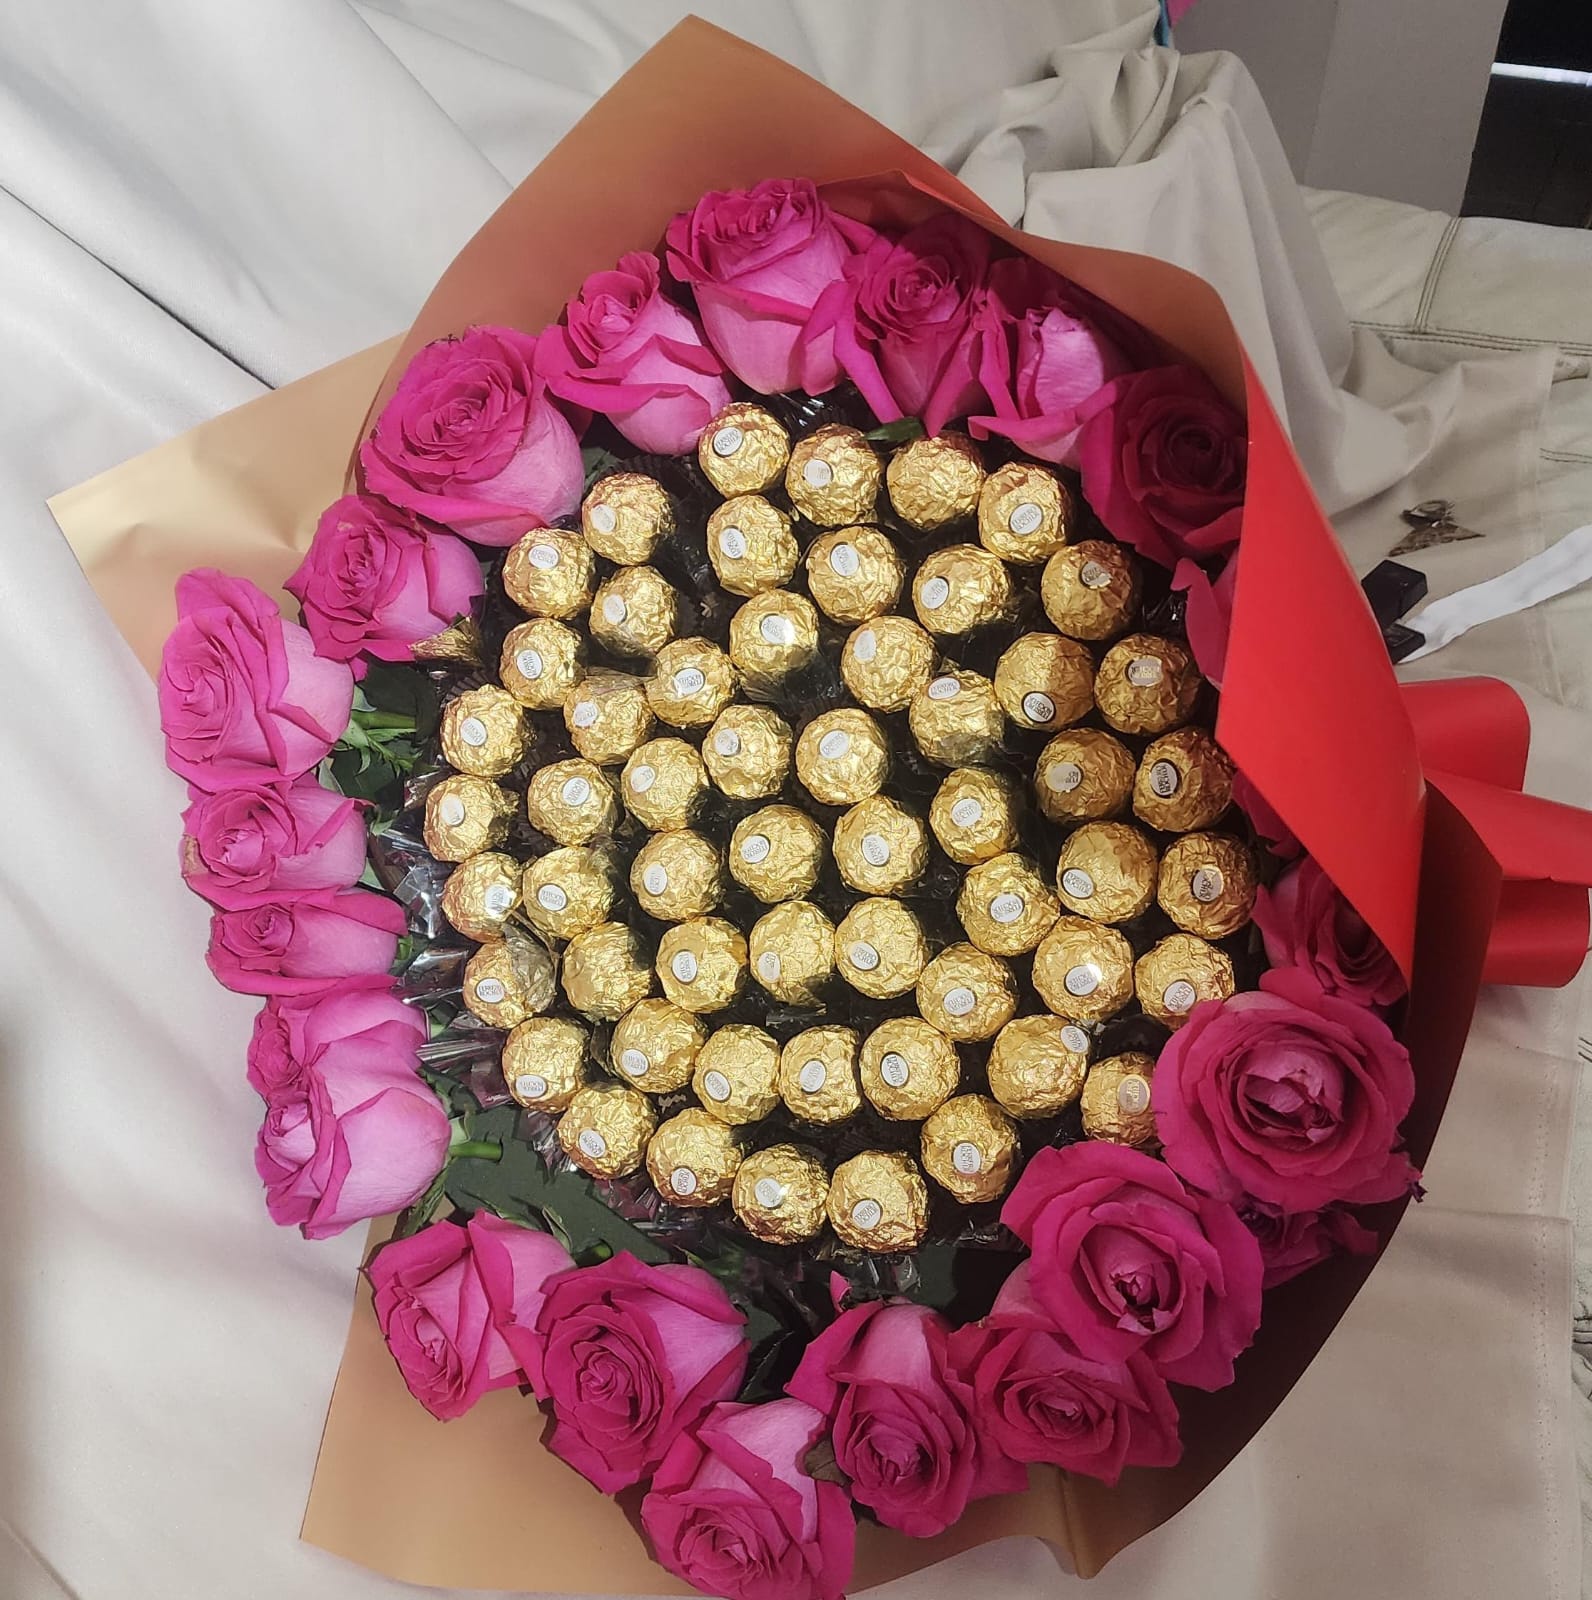 Delicioso ramo de chocolates ferrero rodeado de rosas